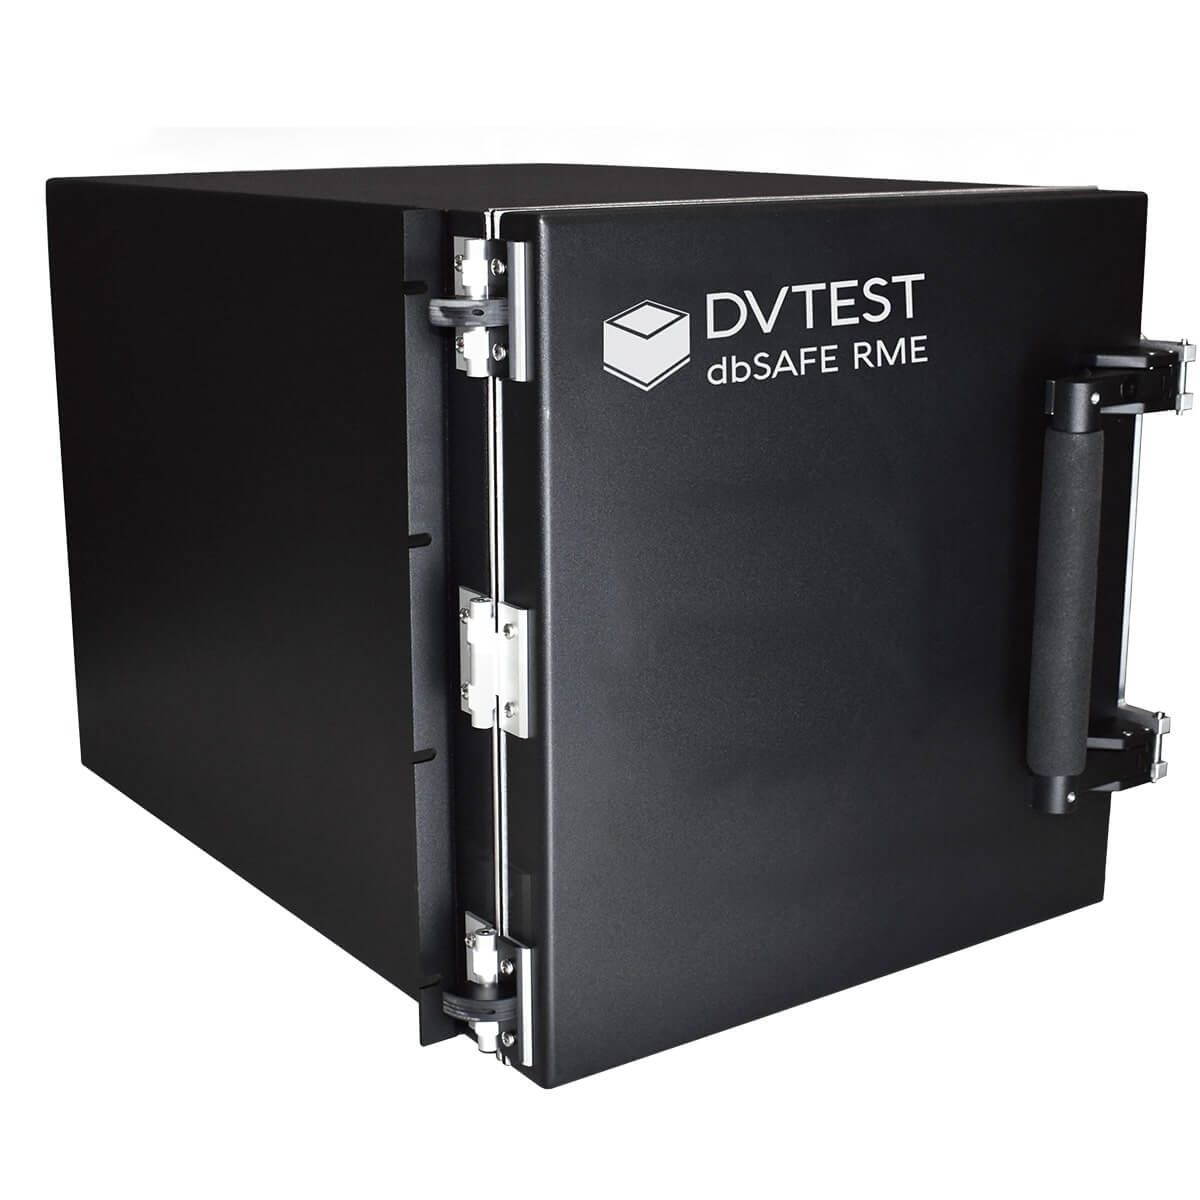 Радиочастотная испытательная камера DVTEST dbSAFE RME с изоляцией до 100 дБ в диапазоне от 300 МГц до 18 ГГц